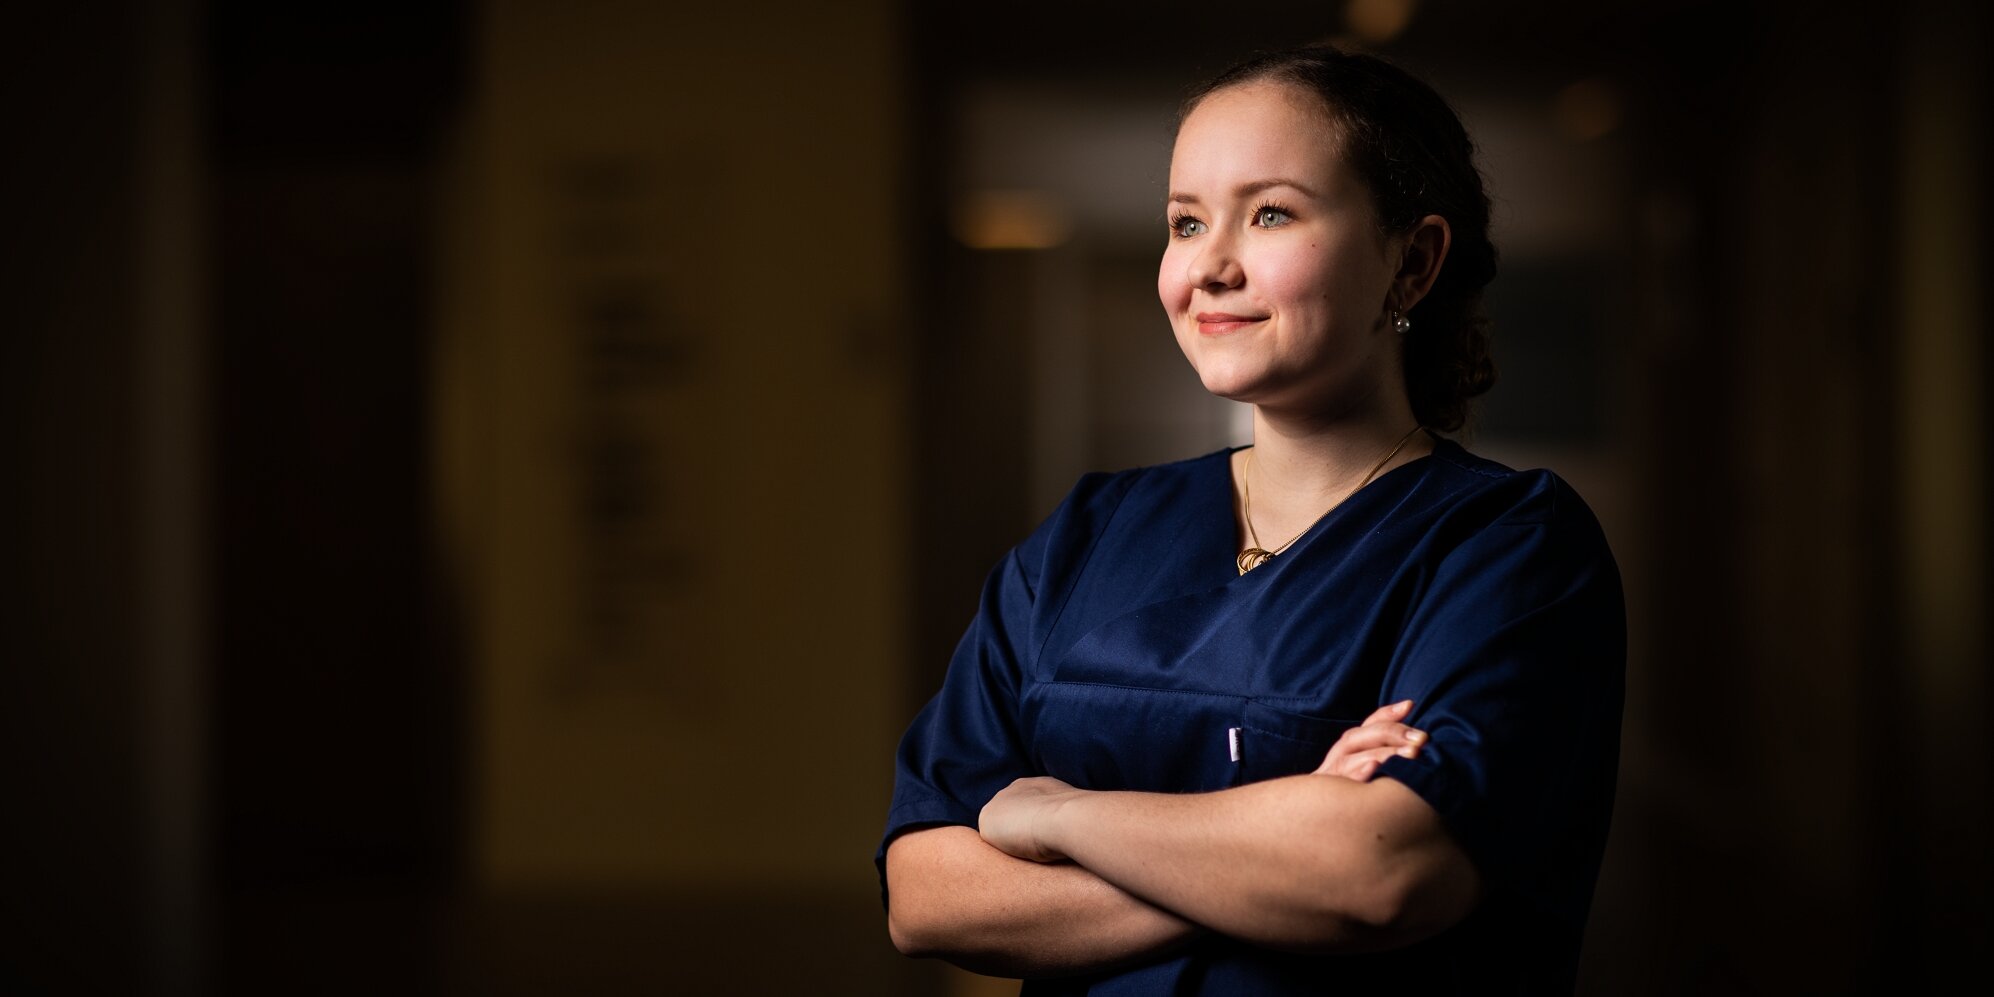 Lucia, seit 2017 Auszubildende zur Gesundheits- und Krankenpflegerin an der Schule für Gesundheits- und Krankenpflege